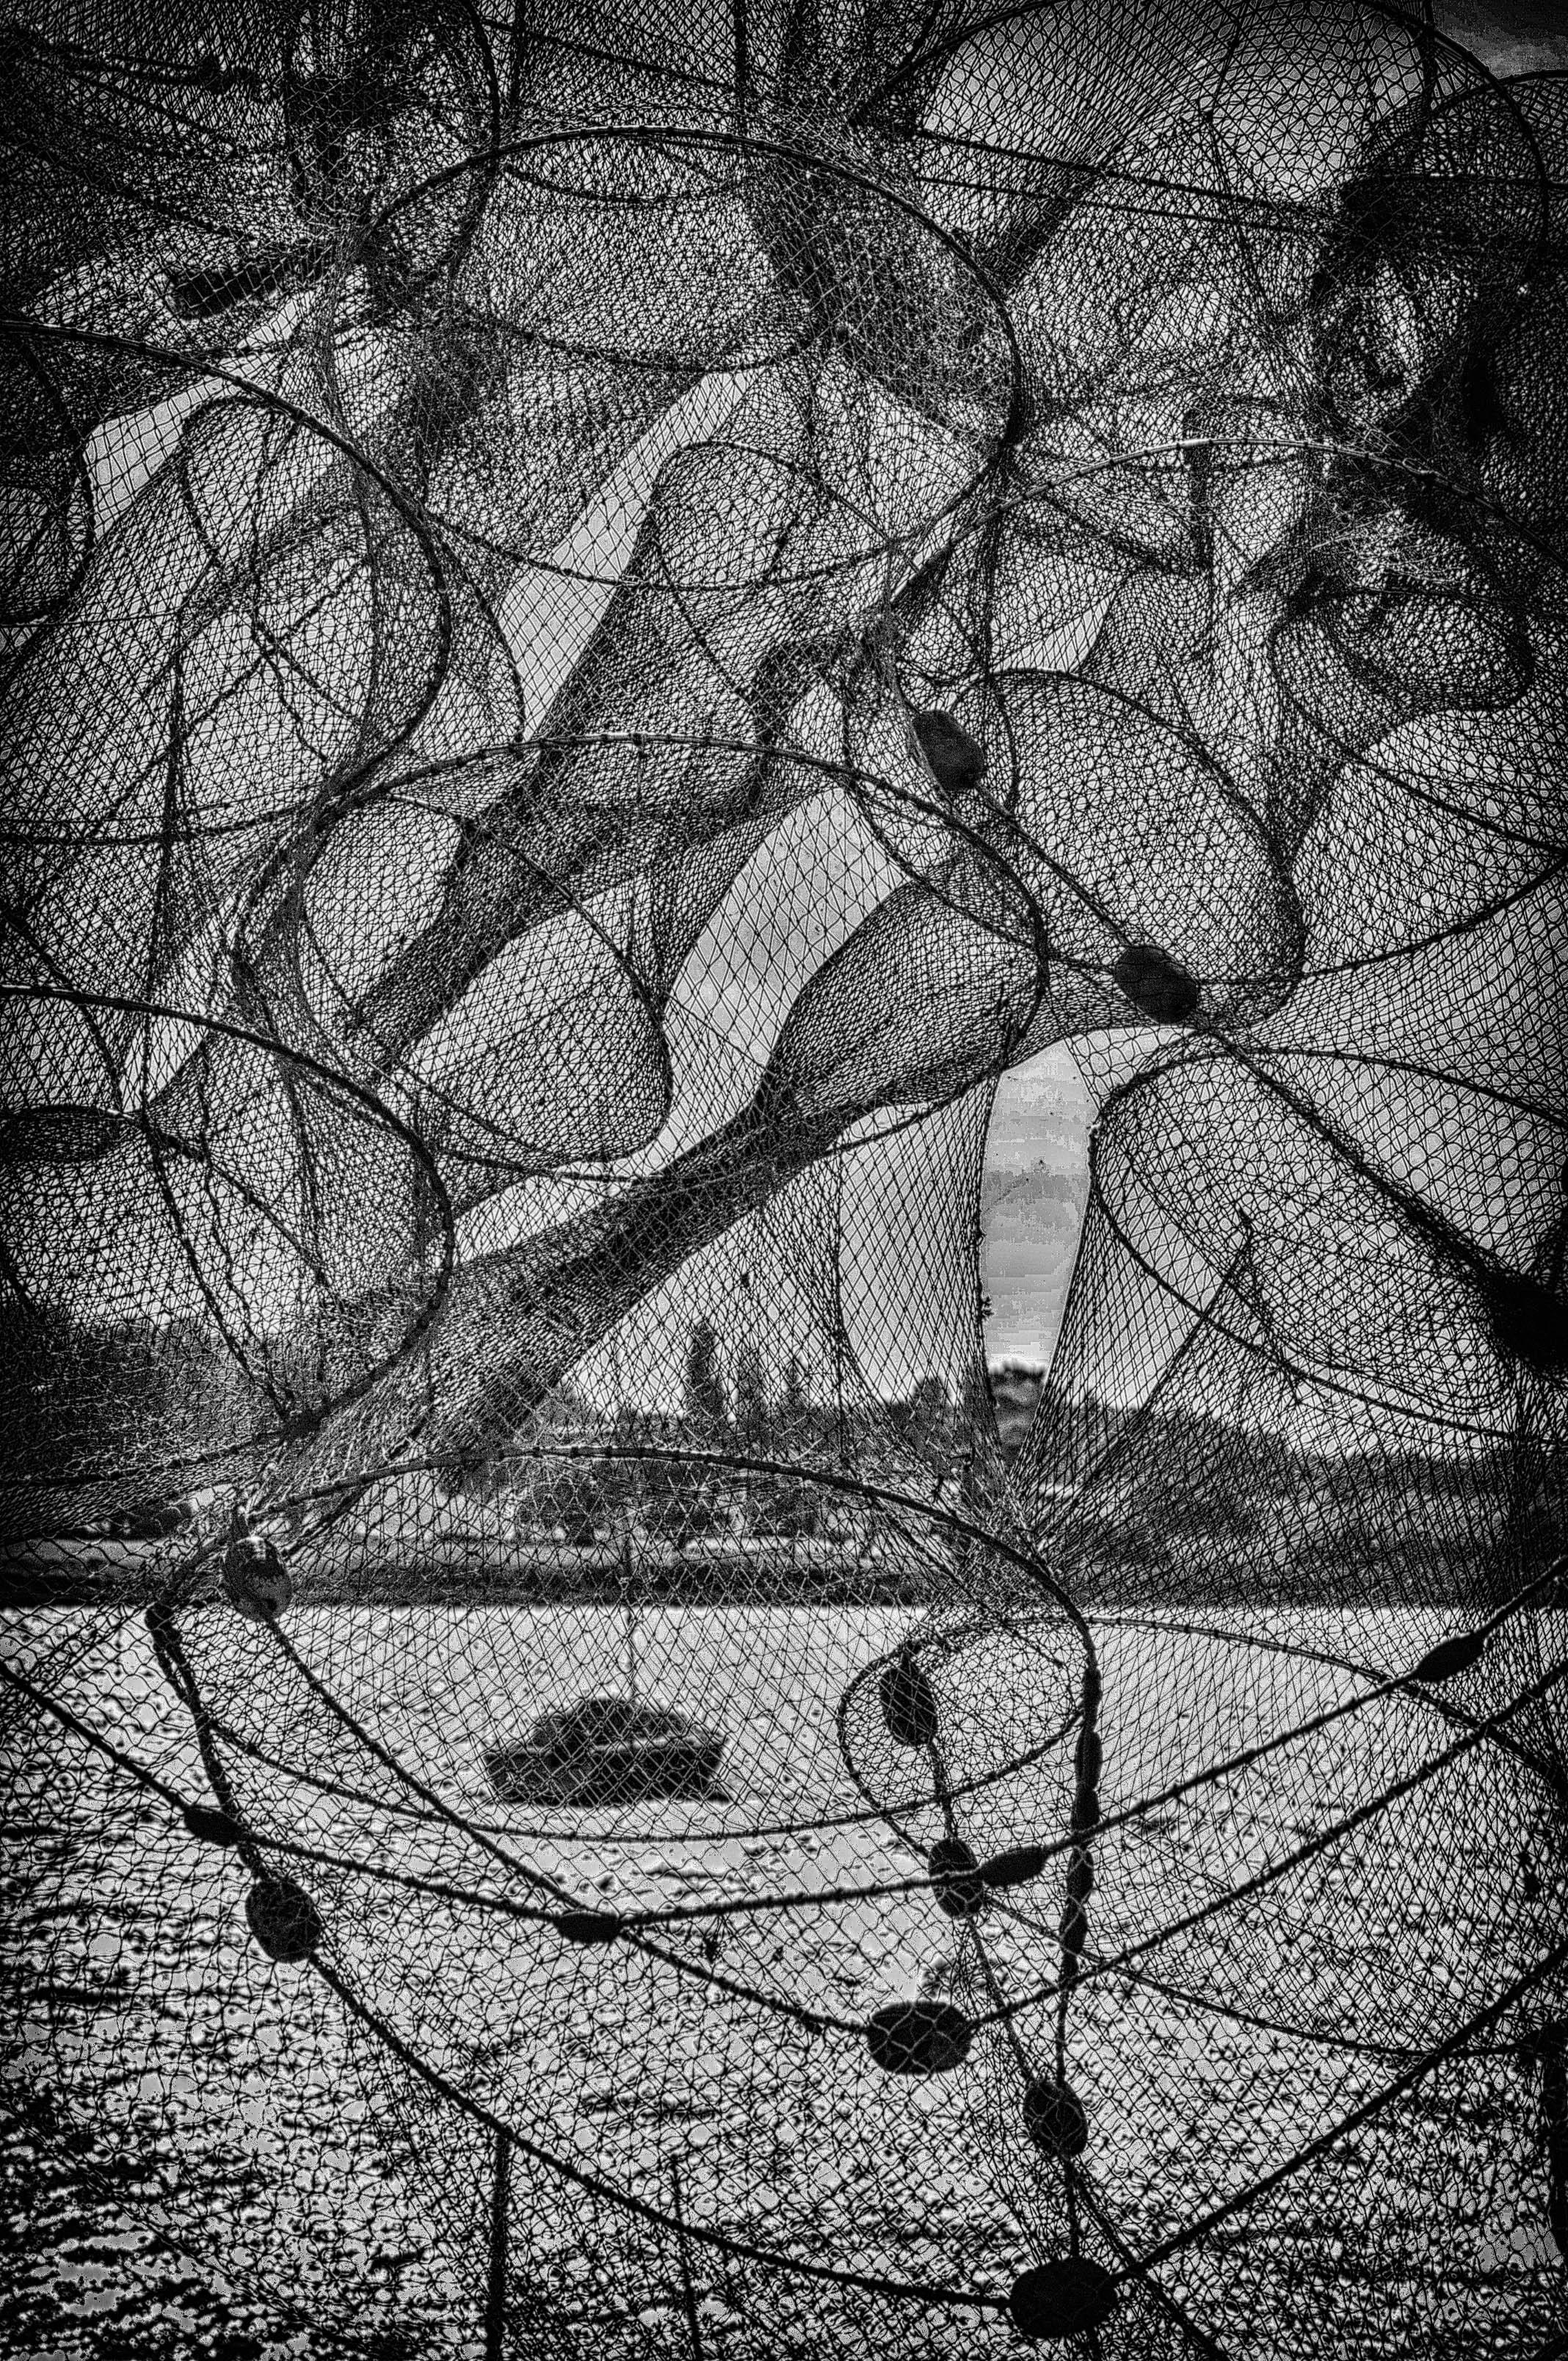 Fishingnets